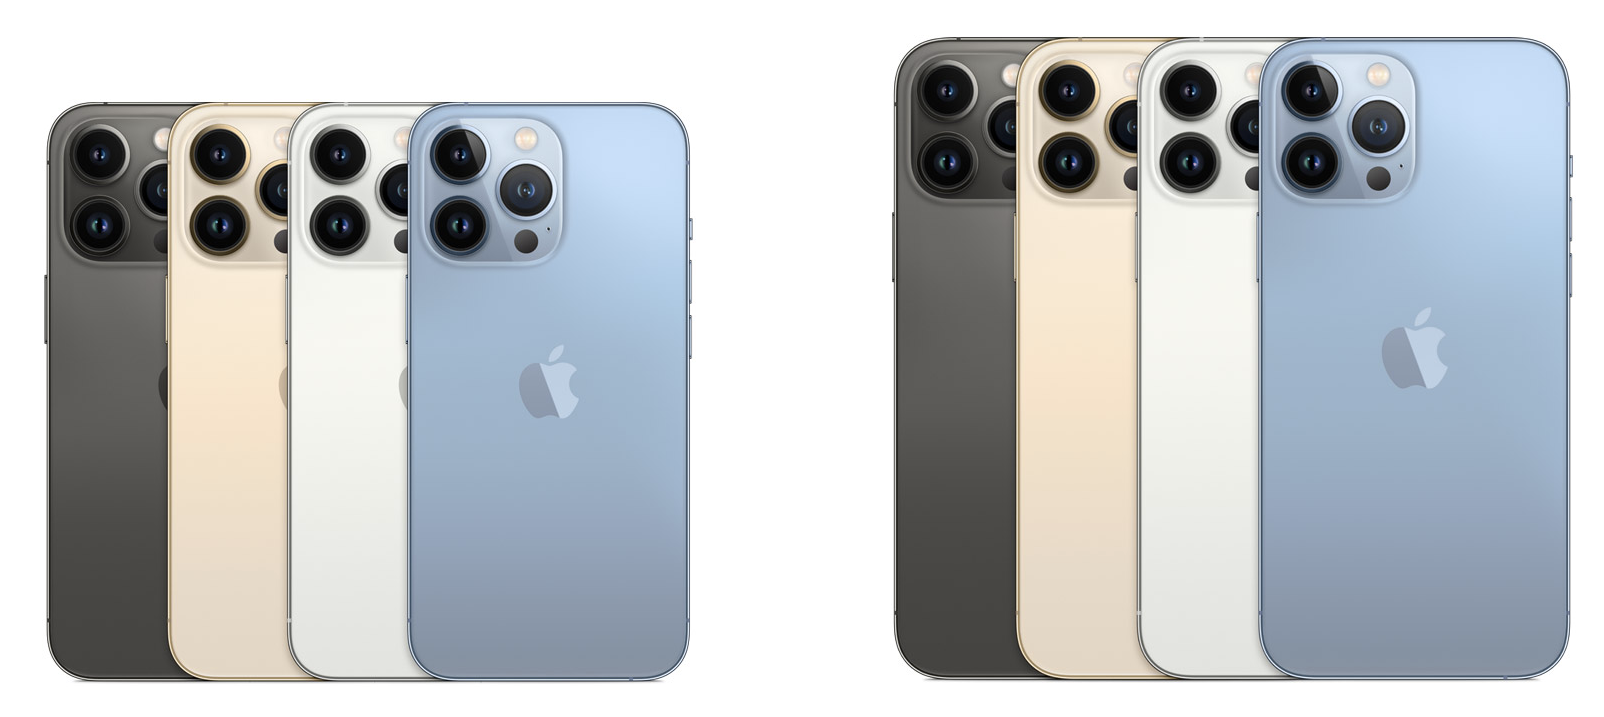 iPhone 13 Pro ja iPhone 13 Pro Max eri väreissä.